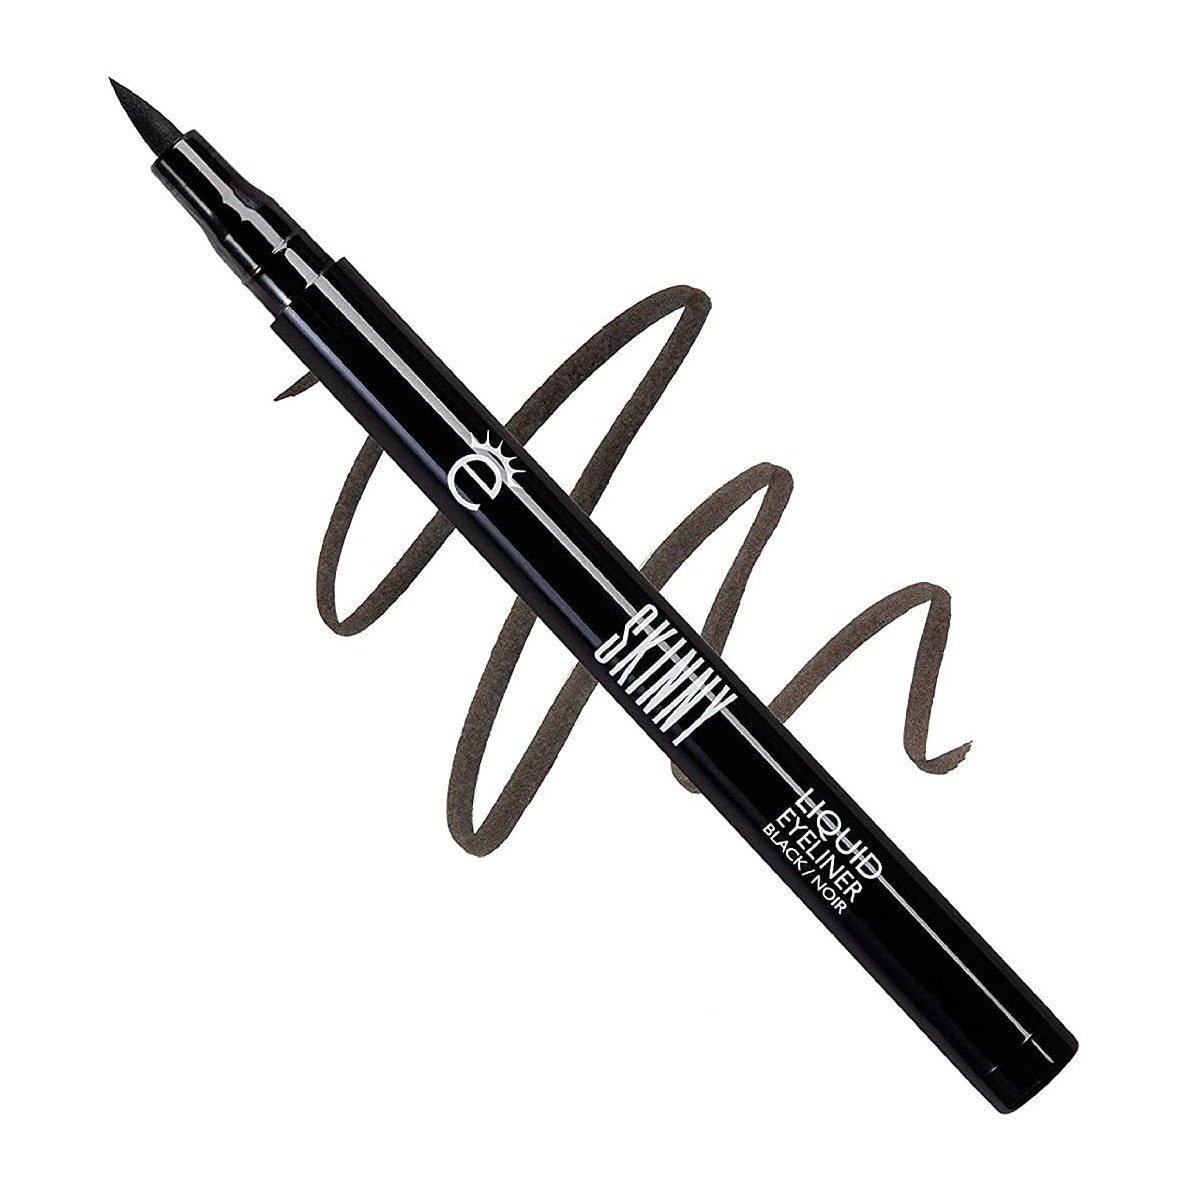 Eyeko Skinny Liquid Liner schwarzer Flüssig-Eyeliner-Stift mit Schnörkelmuster auf weißem Hintergrund